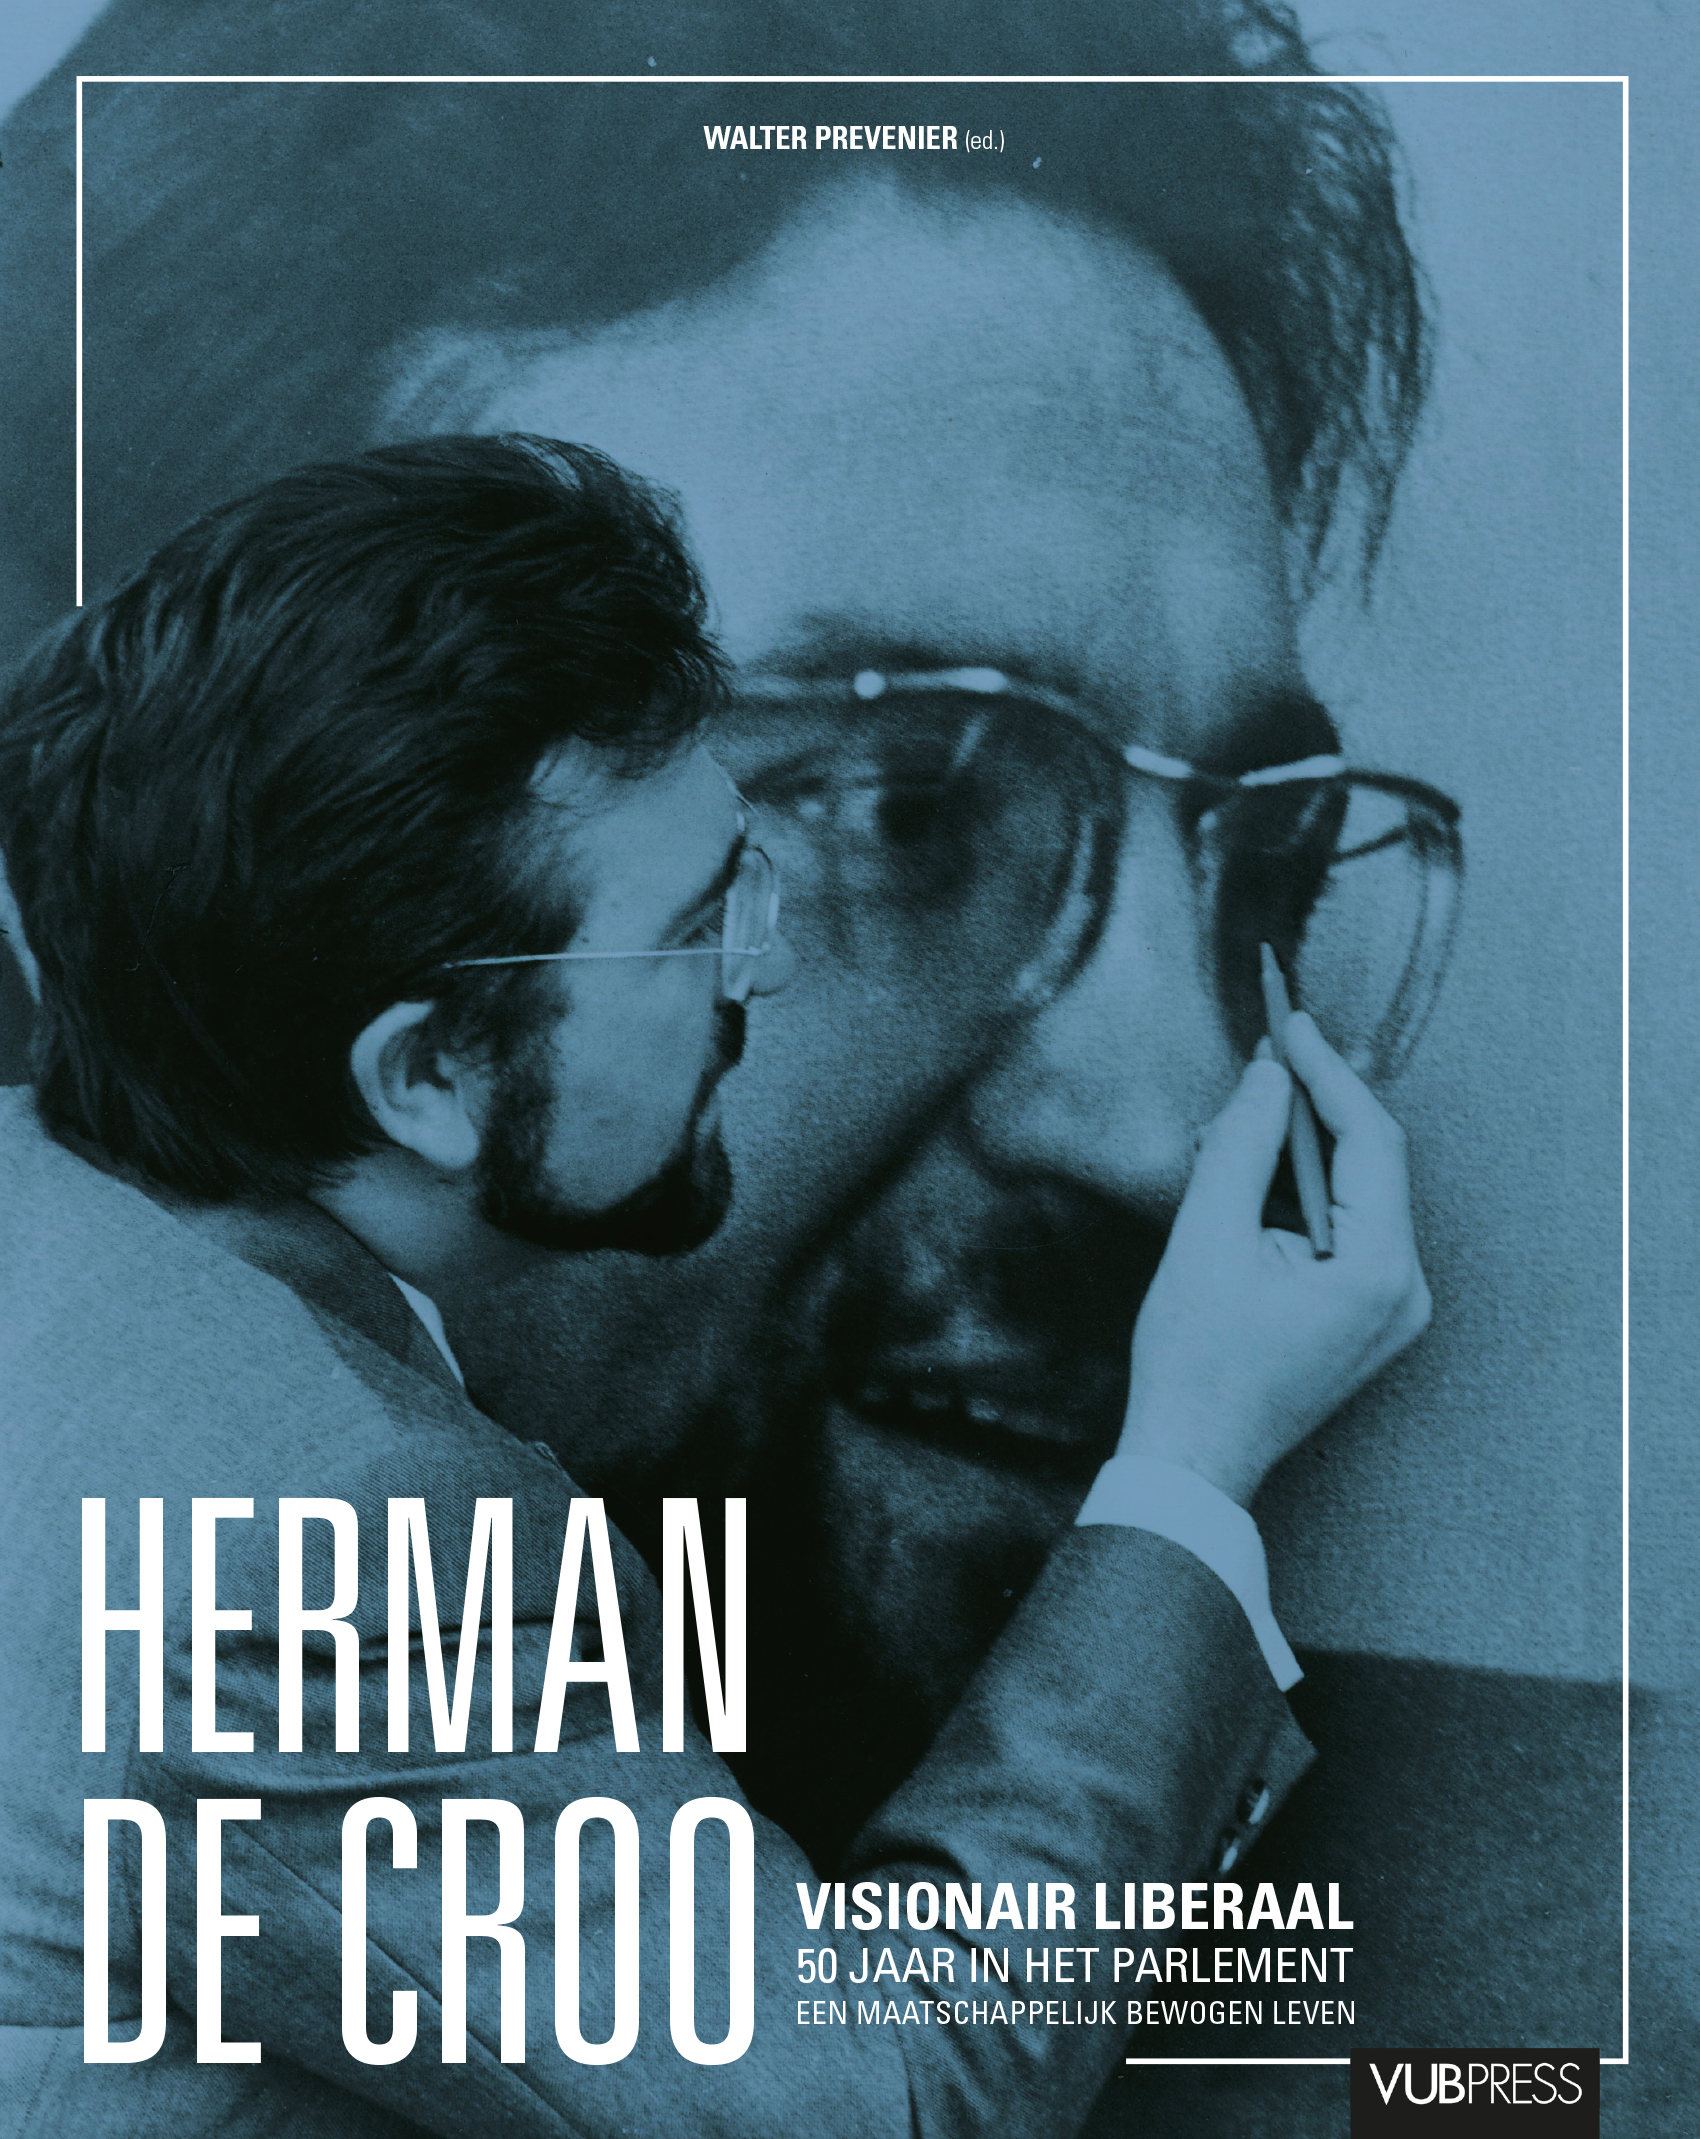 HERMAN DE CROO. VISIONAIR LIBERAAL, 50 JAAR IN HET PARLEMENT